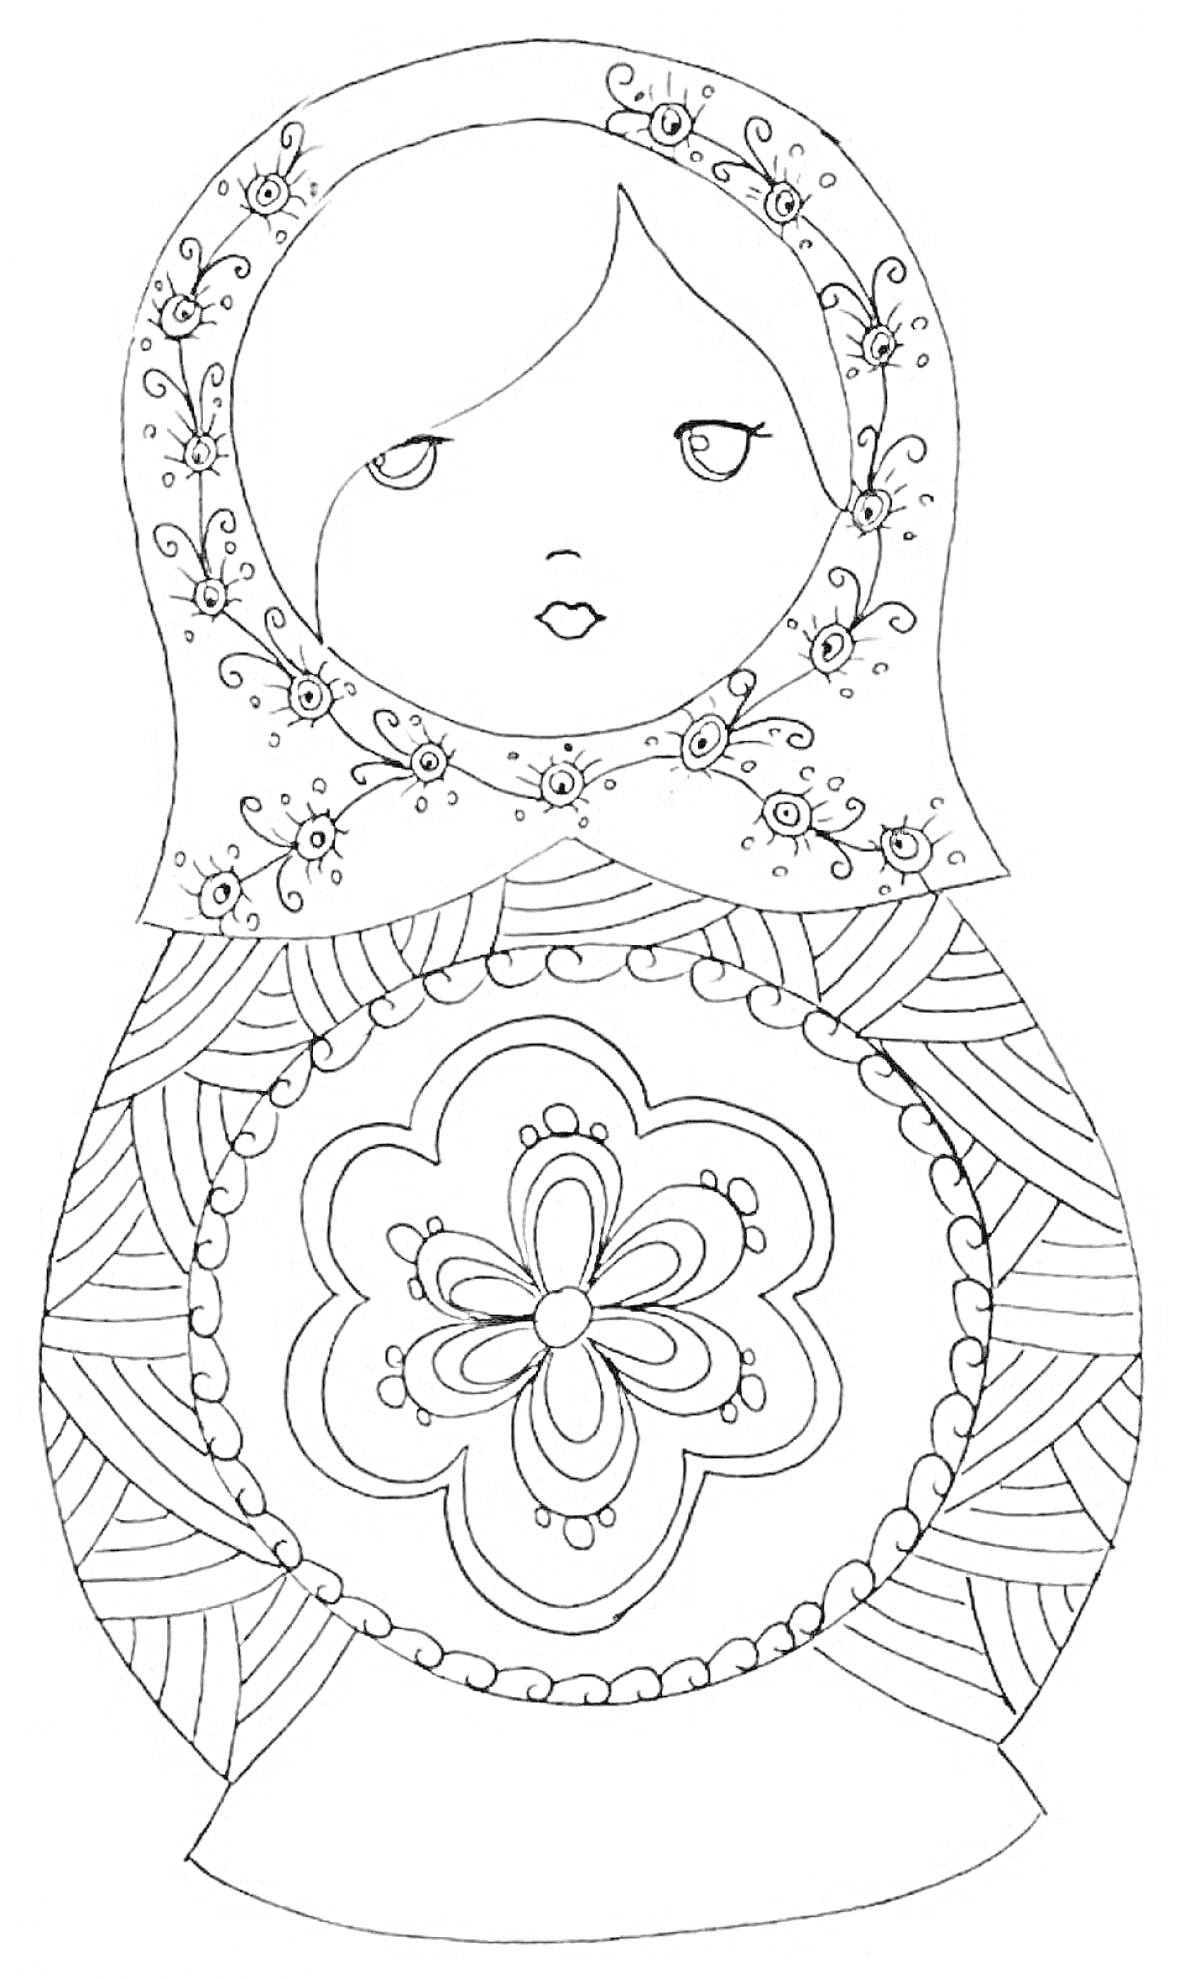 Раскраска Матрешка с цветочным узором на платке и крупным цветком на животе